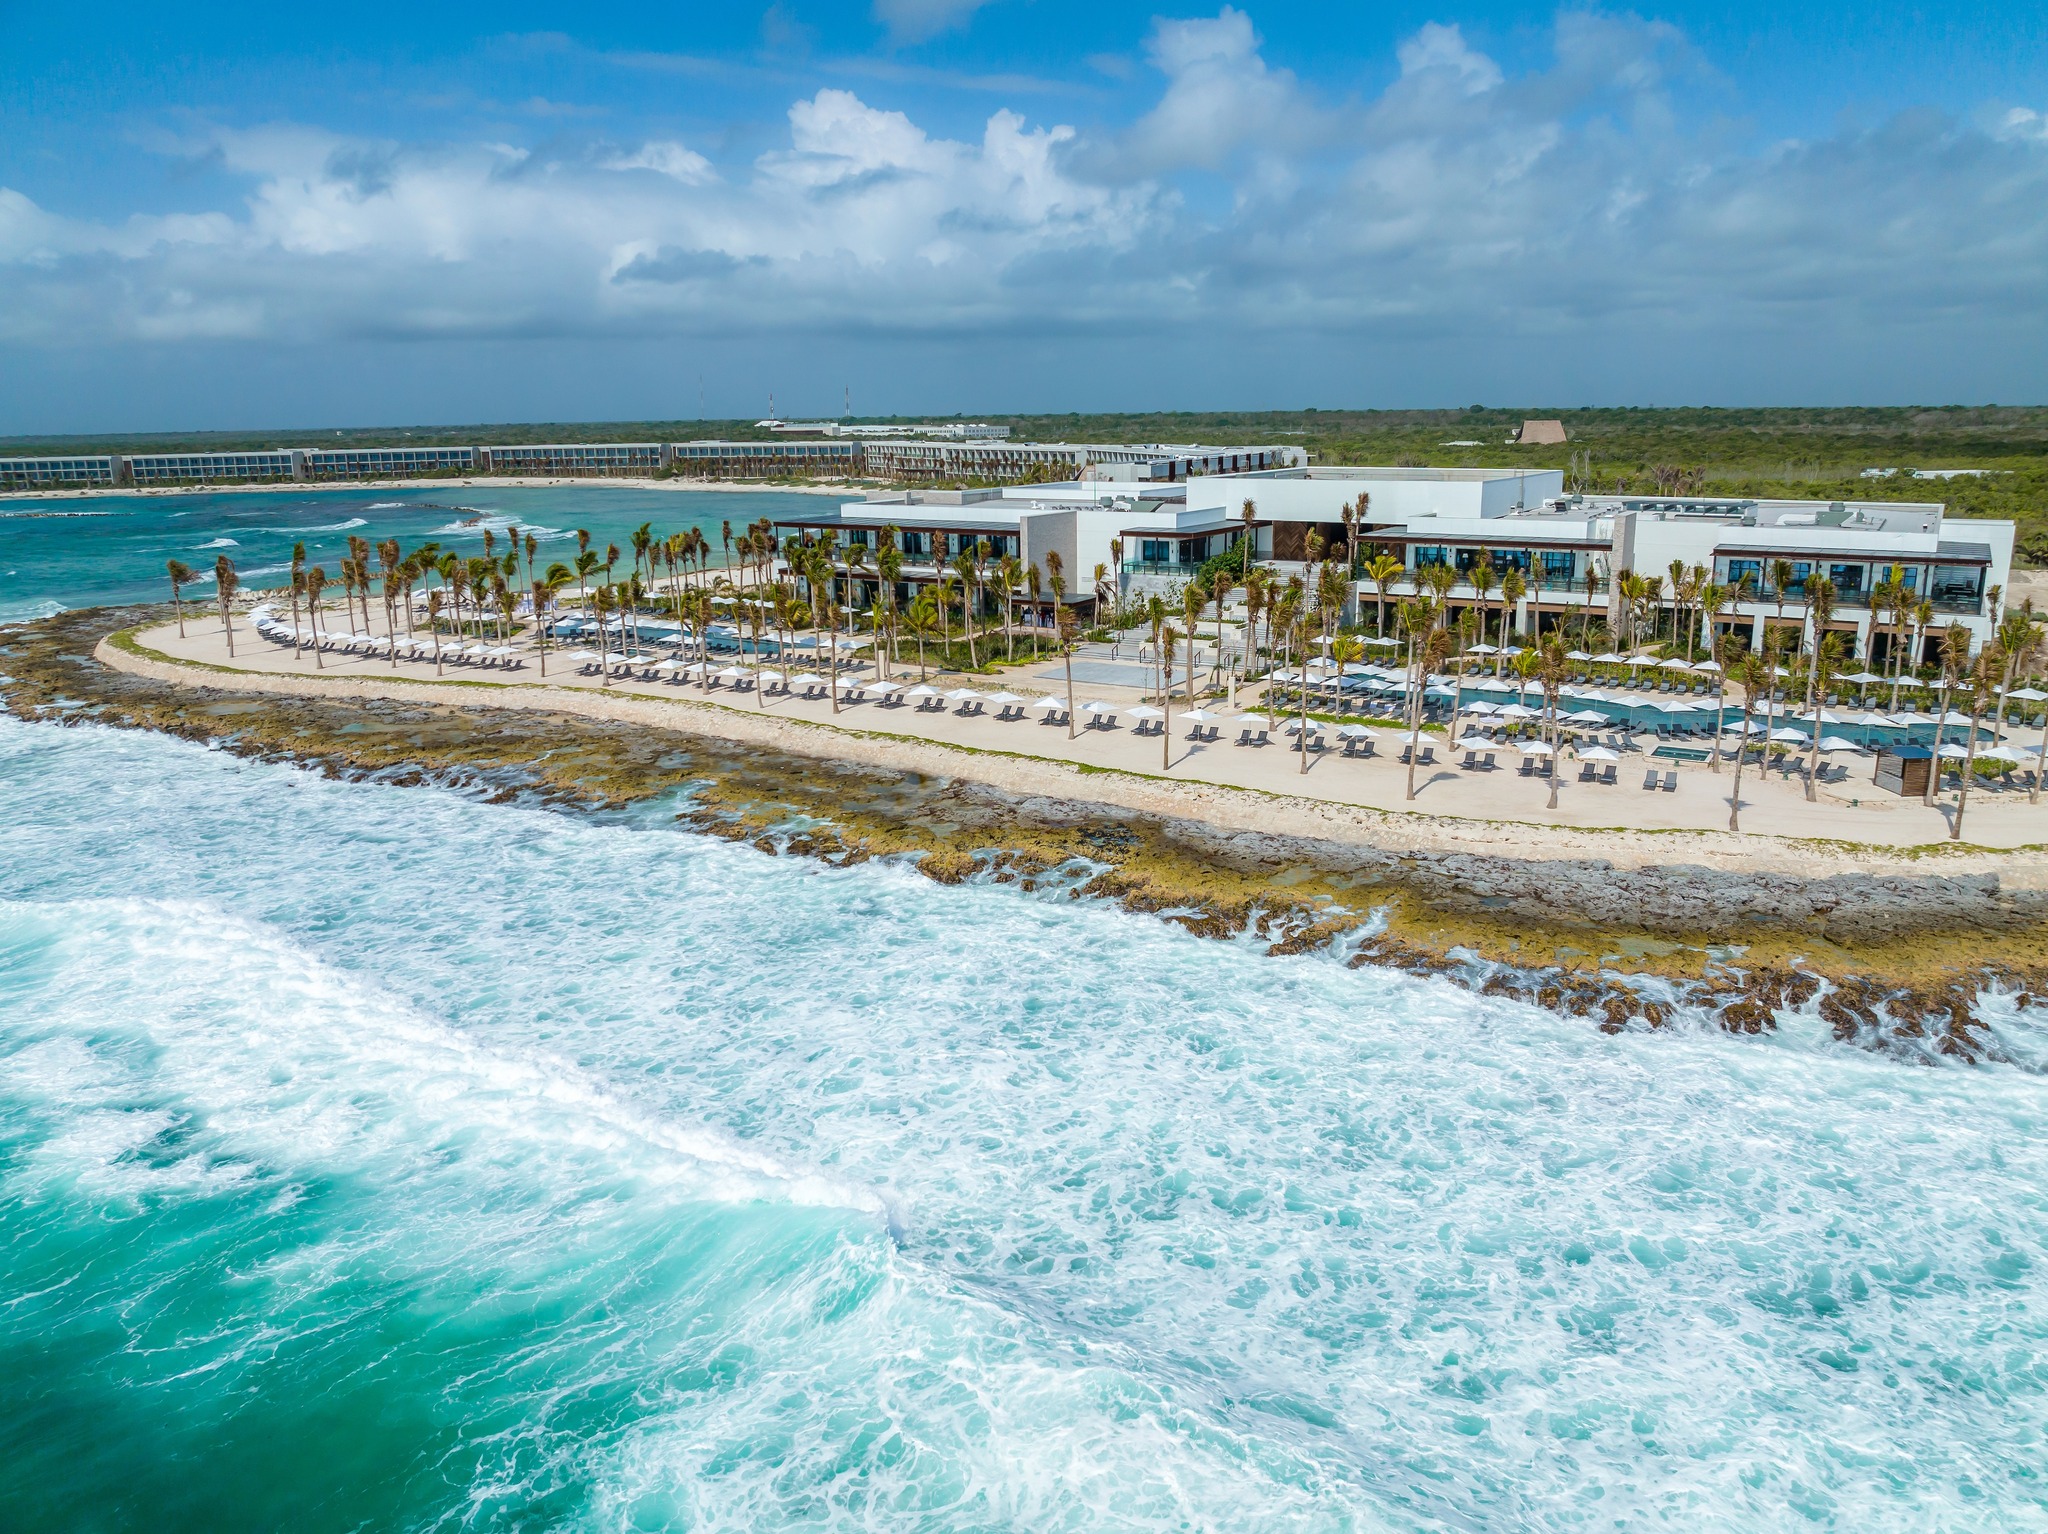 Hilton continúa su expansión en el Caribe y América Latina